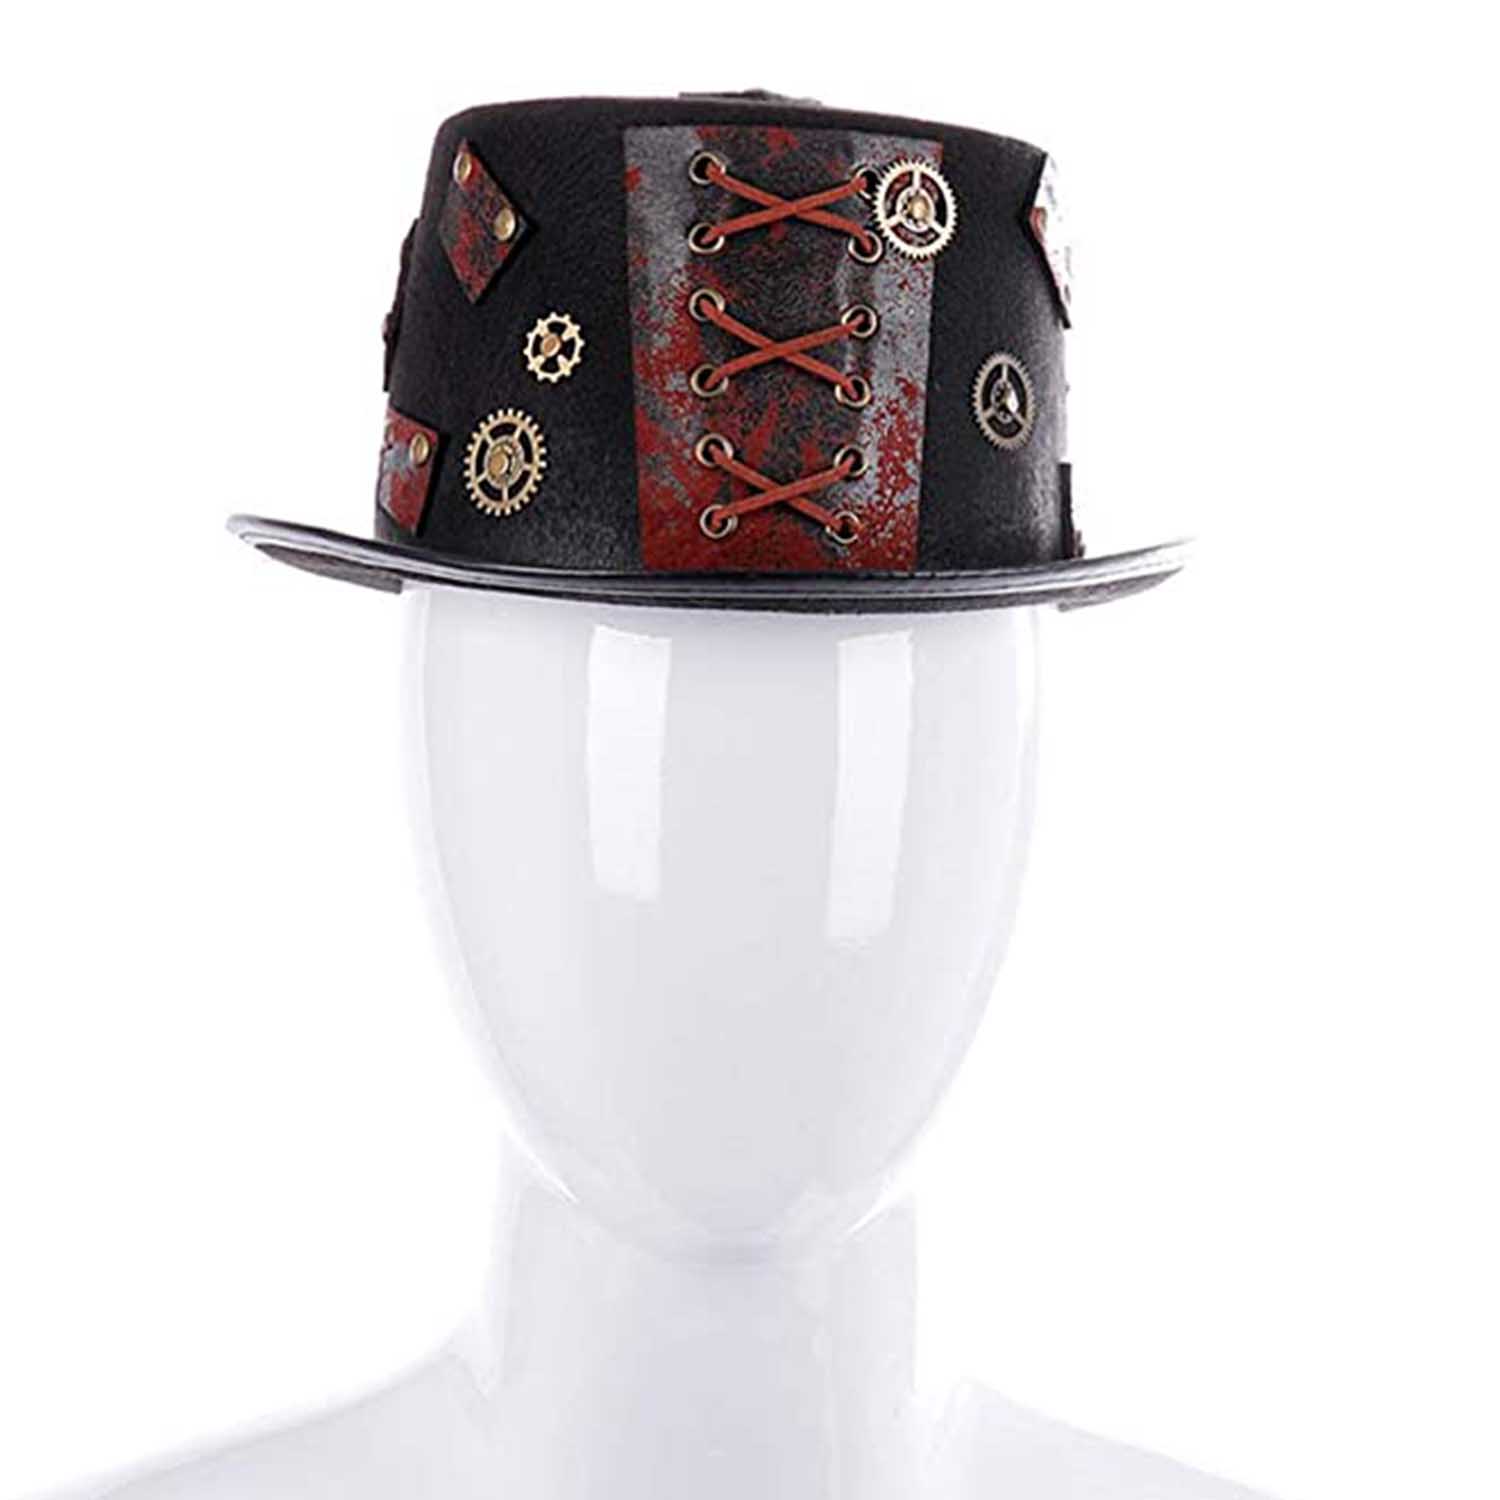 כובע מגבעת סטימפאנק מעוצב במיוחד